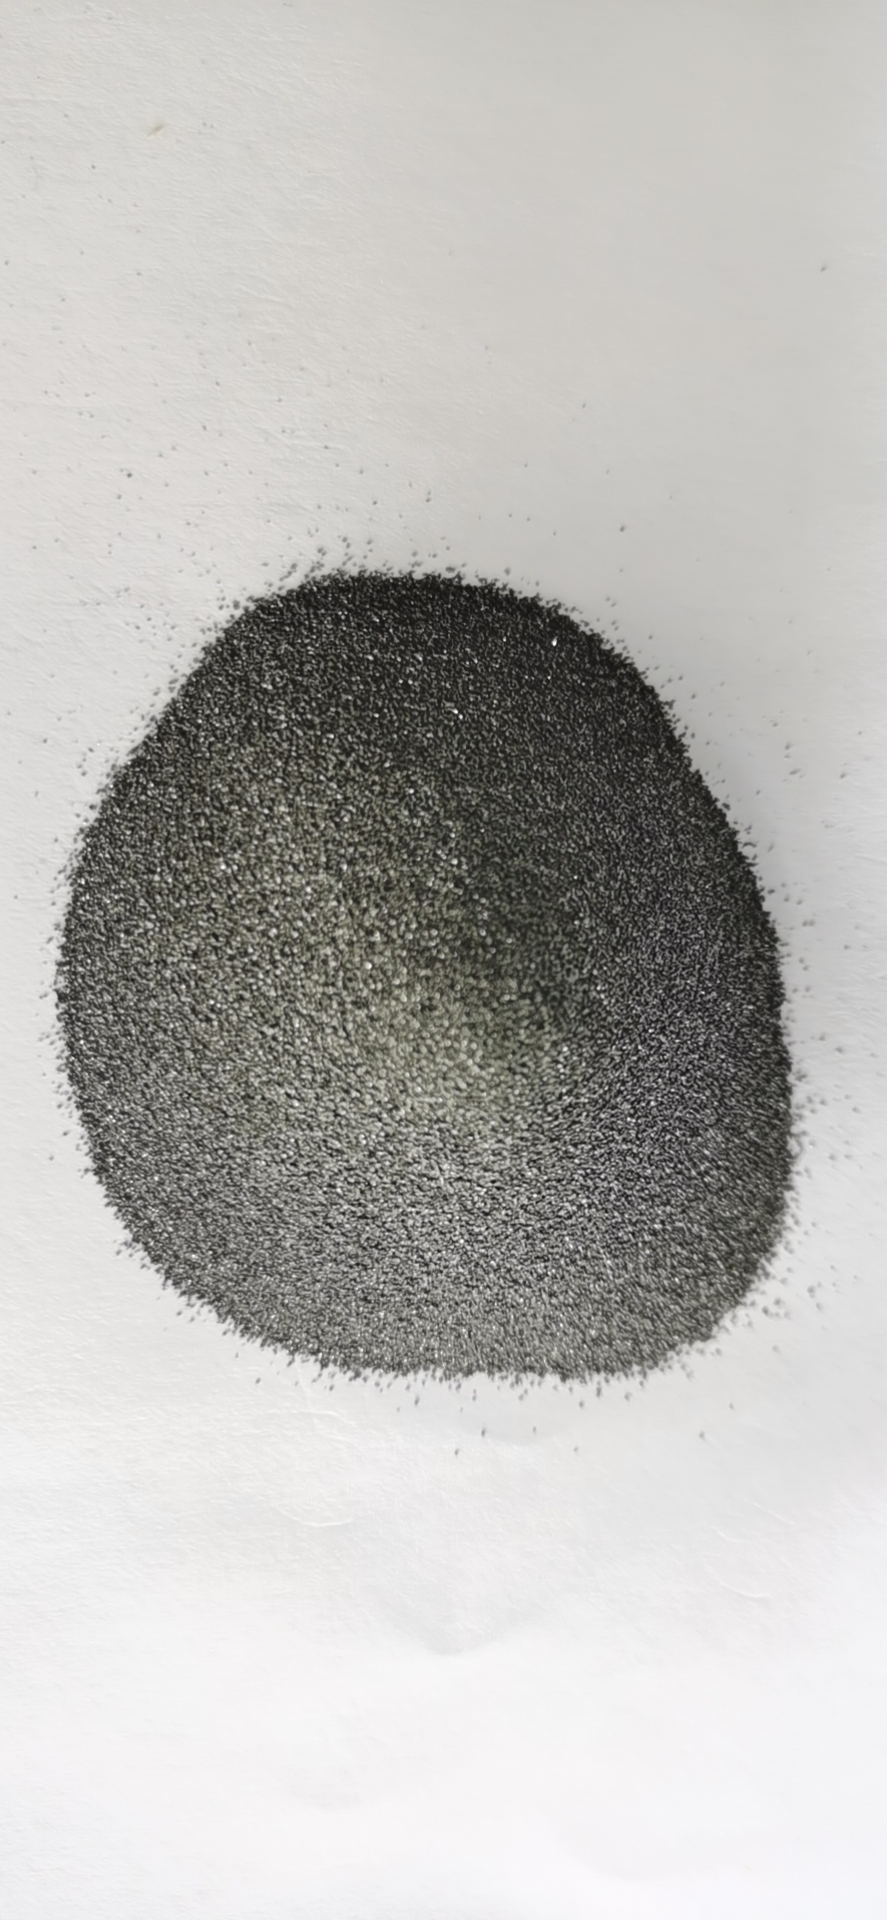 チタンカーバイド 炭化チタン粉末 - FTiC-2 